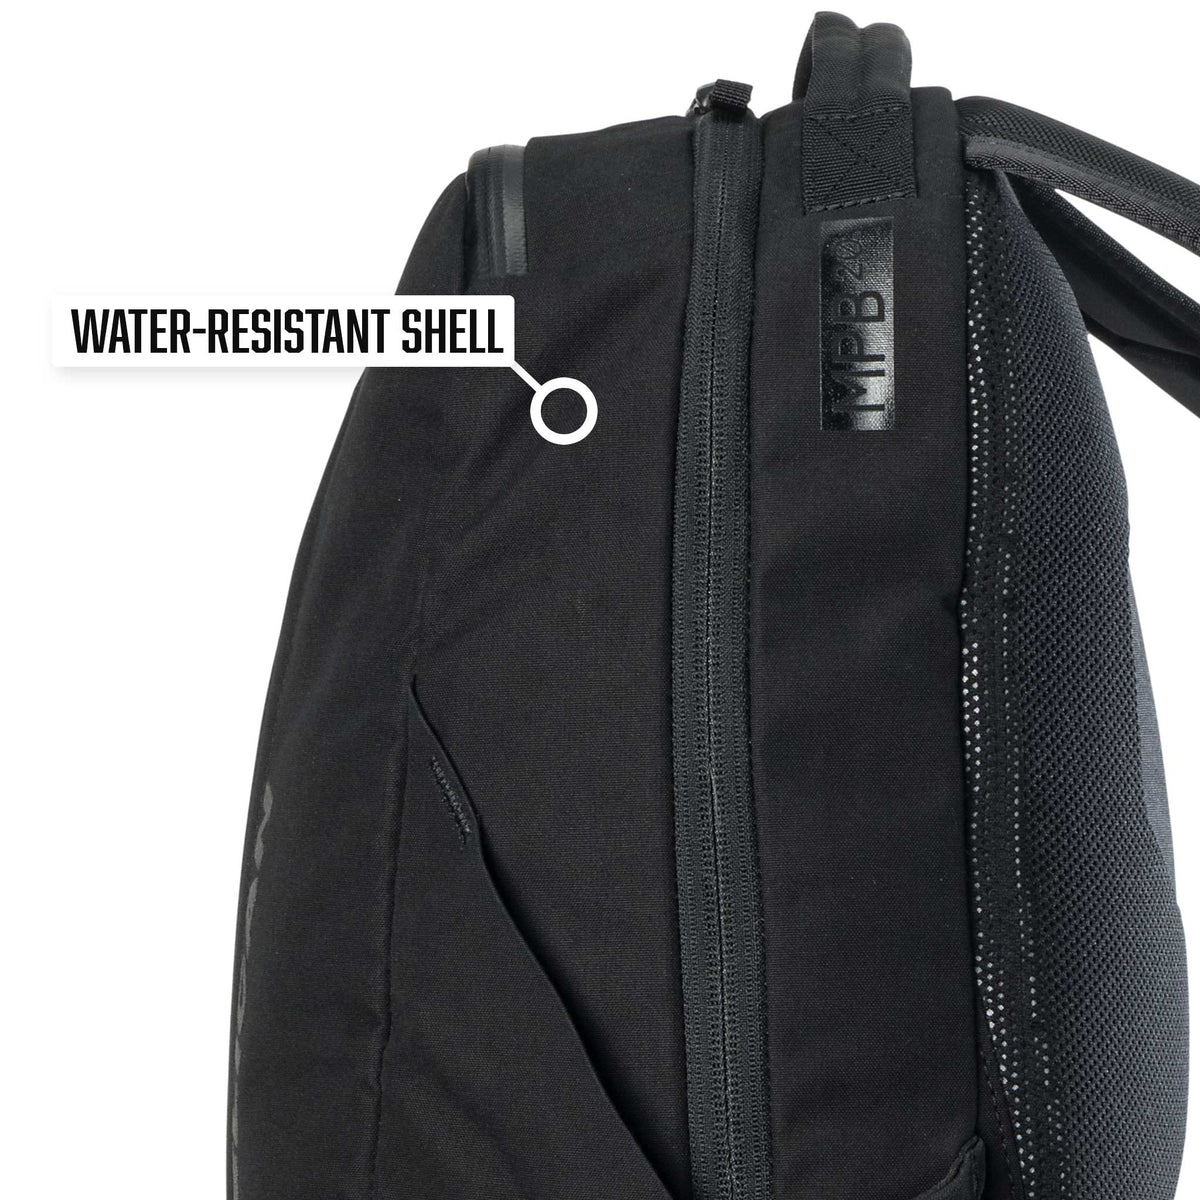 Pelican MPB20 Backpack is water-resistant